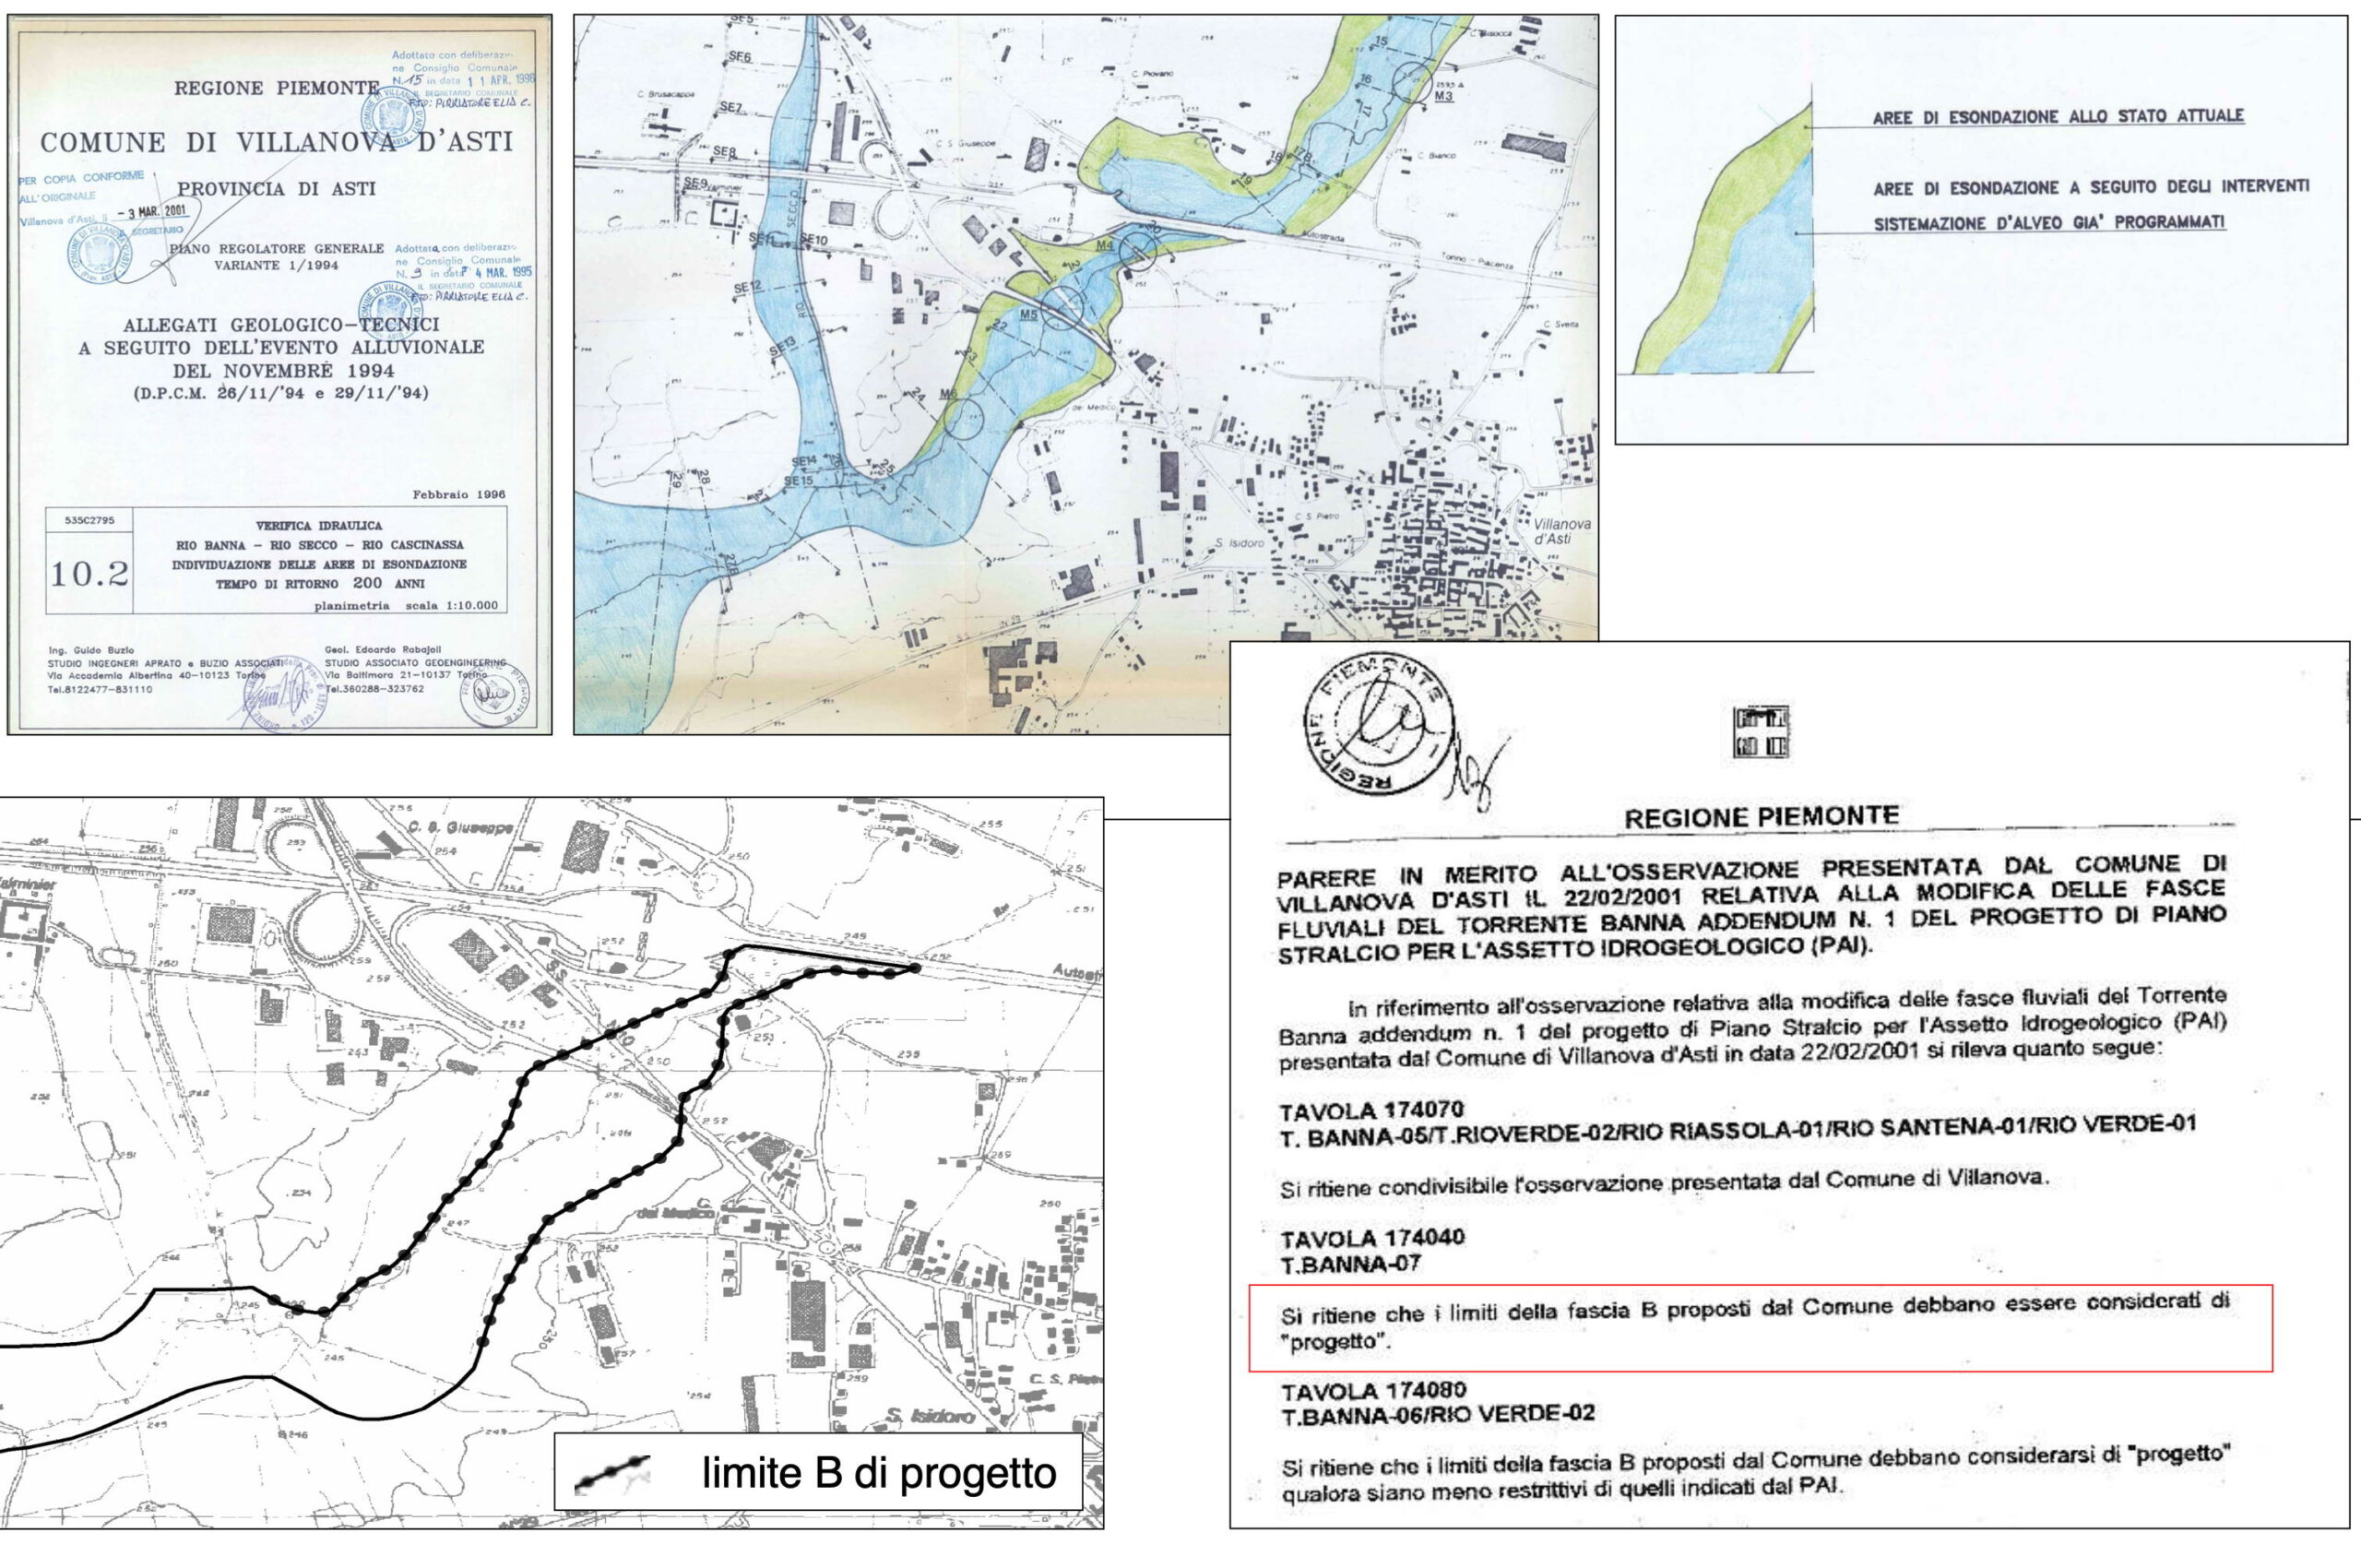 Fonte: Autorità di bacino del fiume Po - Monografia del bacino del Torrente banna - Settembre 2015